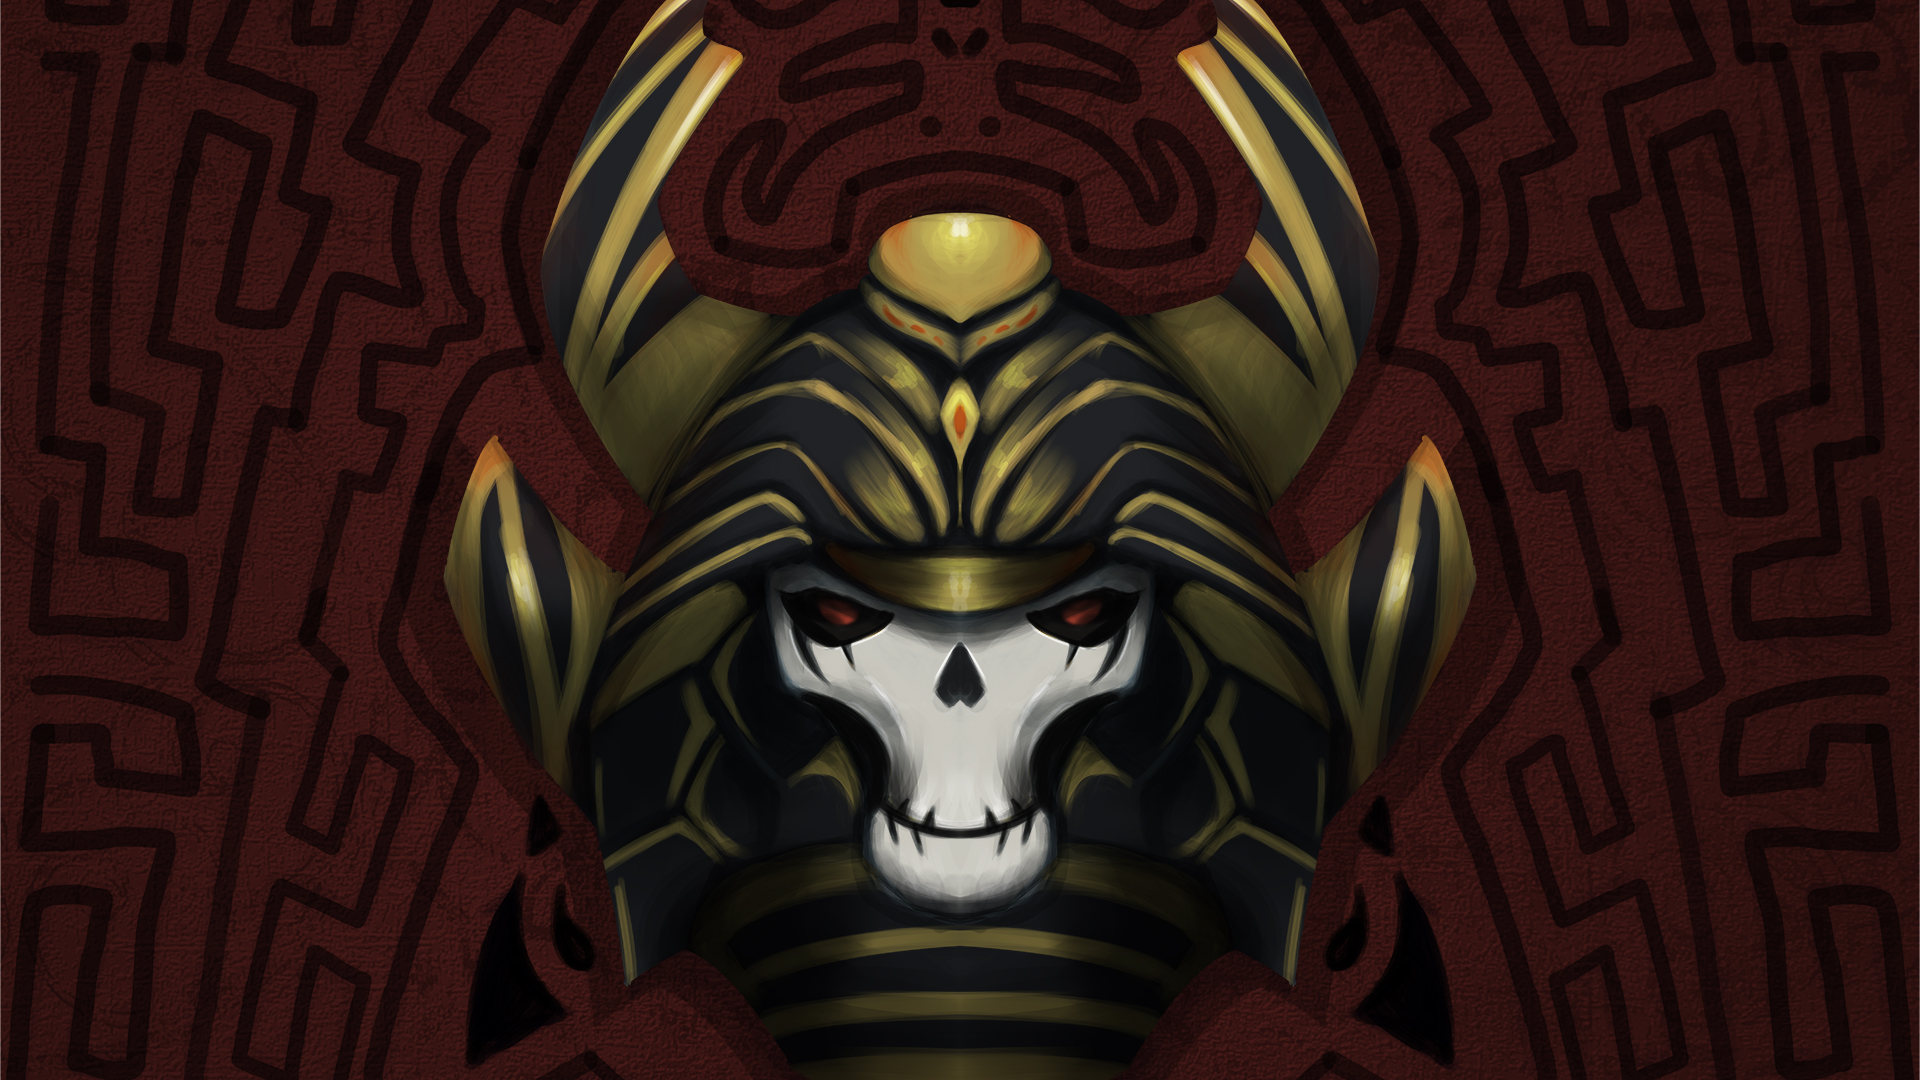 General 1920x1080 skull and bones skull mask Samuel helmet red Ornate gold texture